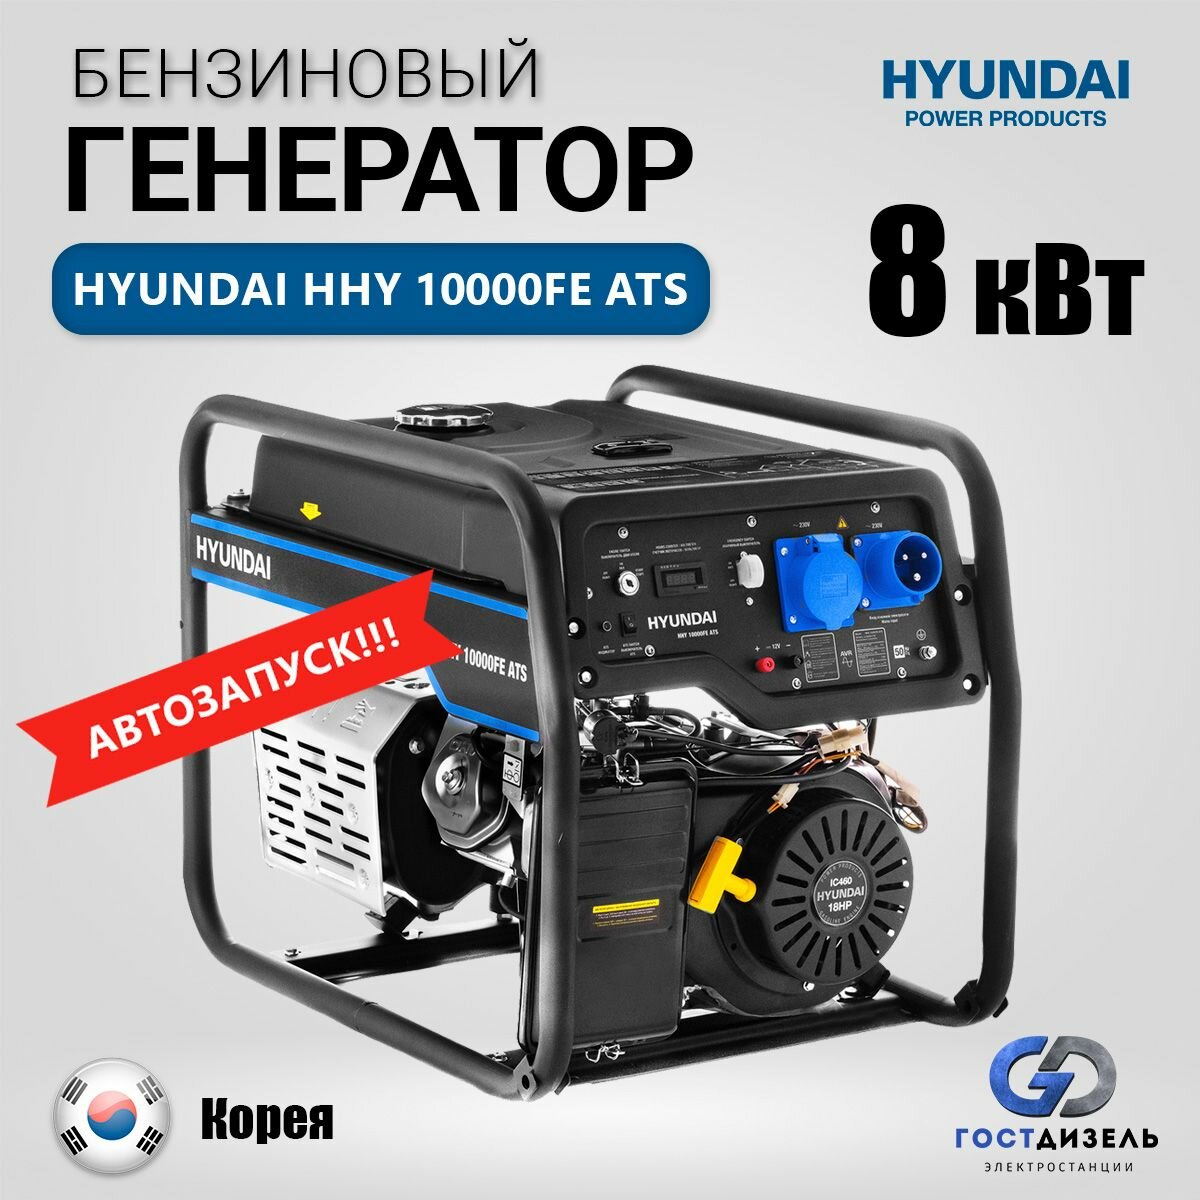 Бензиновый генератор Hyundai HHY 10000FE ATS (8.0 кВт) с автозапуском